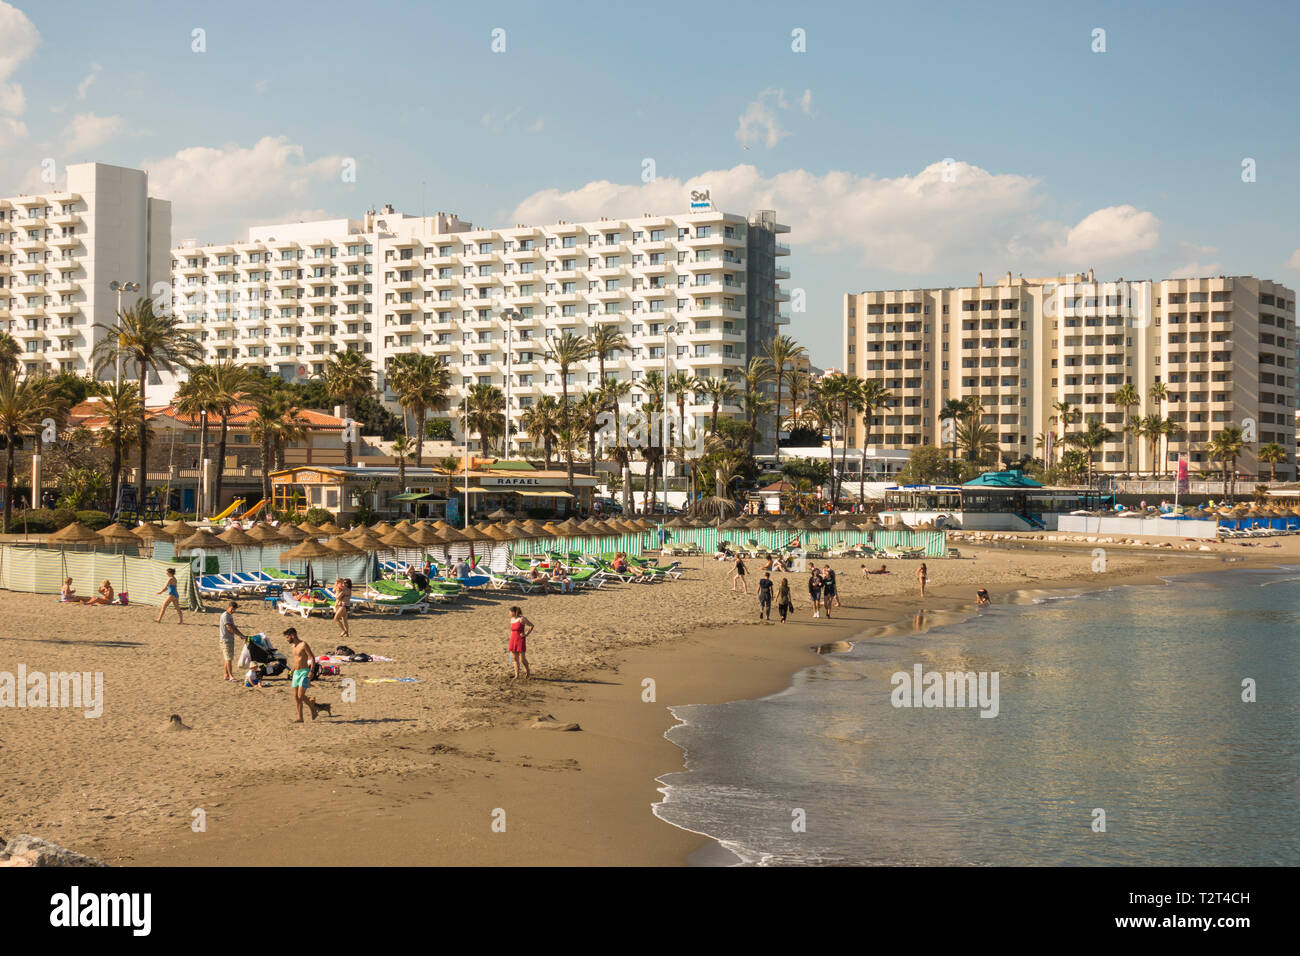 Vue de la côte de Benalmadena Costa, avec les hôtels et les immeubles à appartements, Costa del Sol, Andalousie, espagne. Banque D'Images